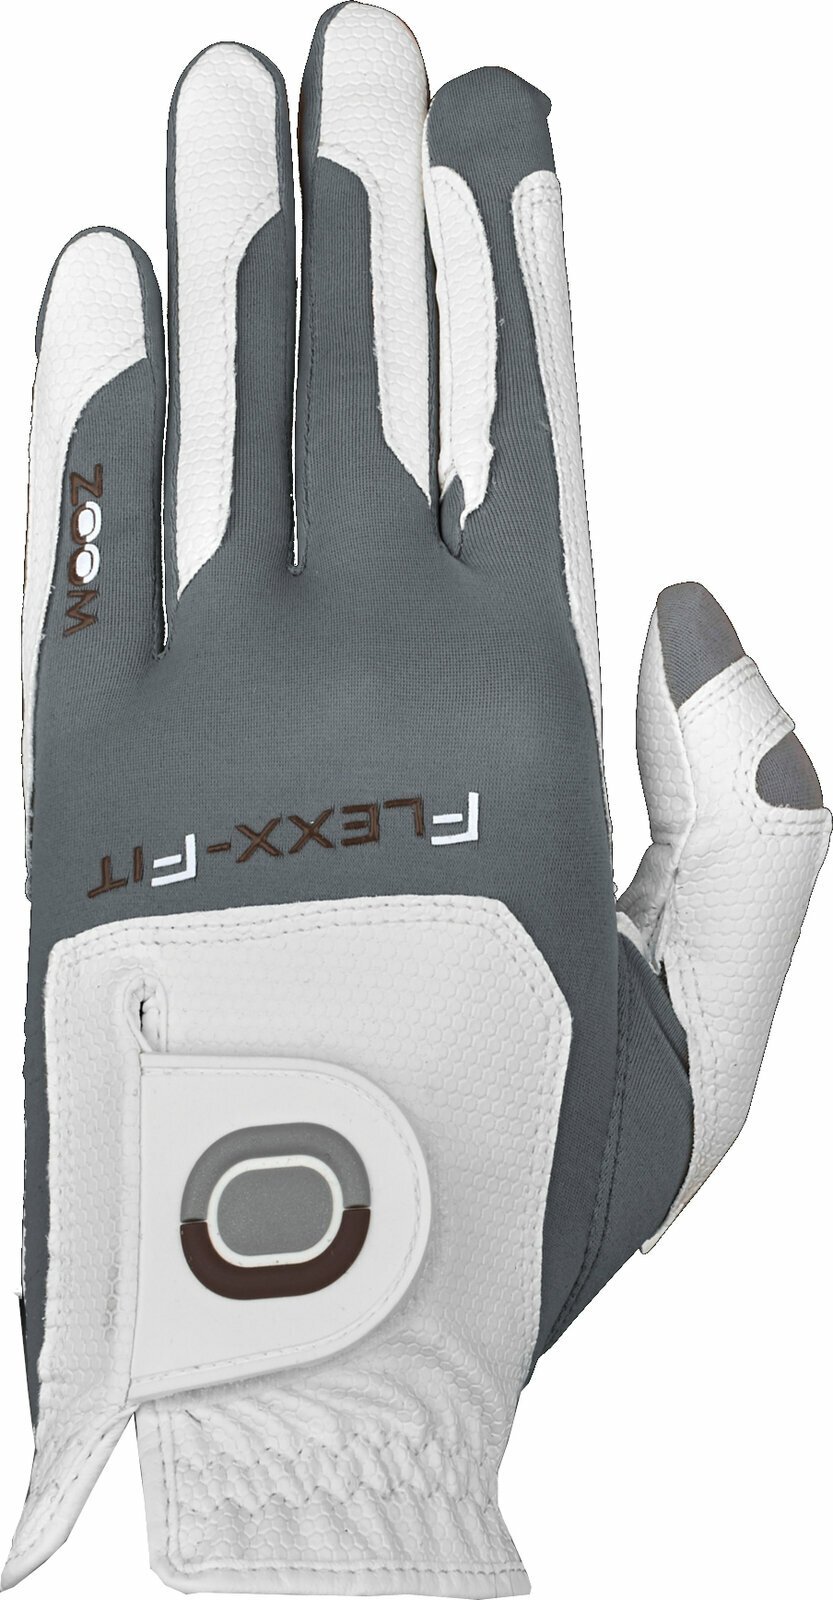 Gloves Zoom Gloves Weather Mens Golf Glove White/Silver RH